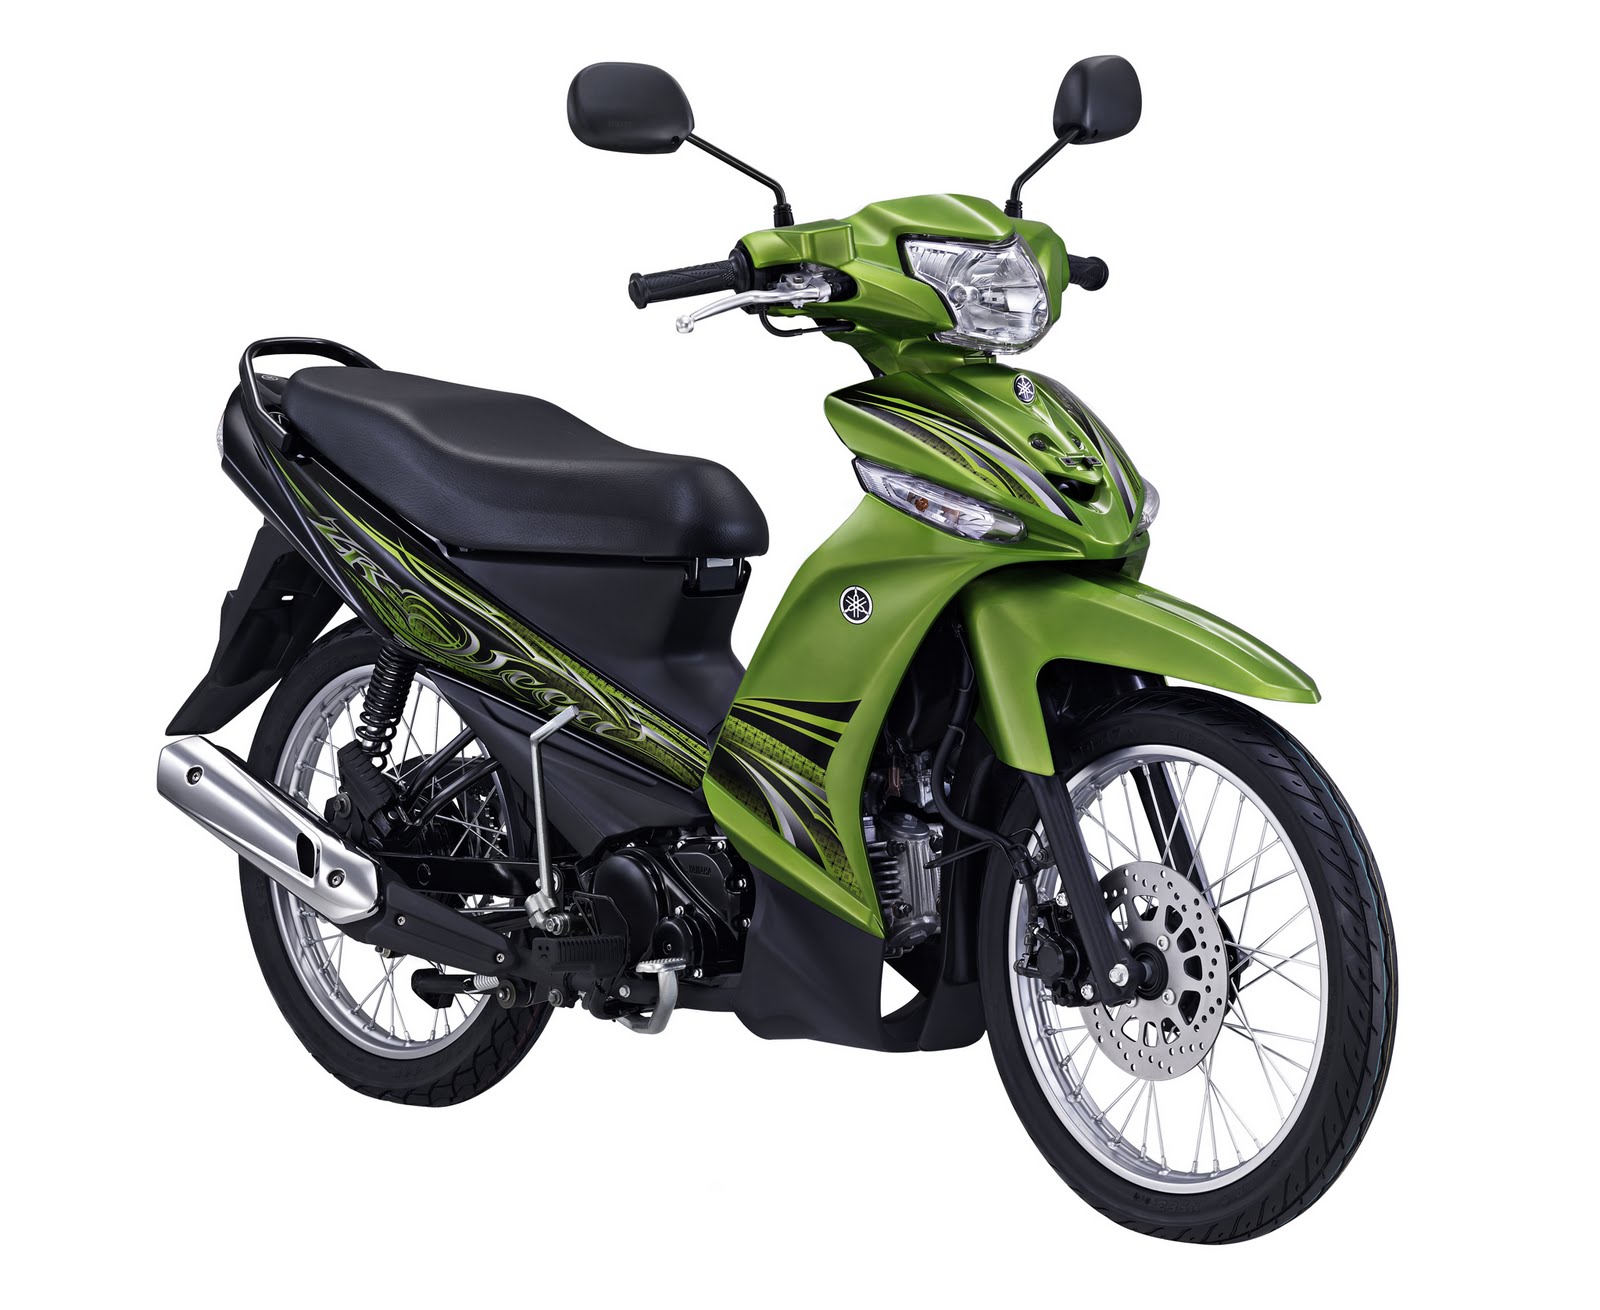 Koleksi Gambar Sepeda Motor Yamaha Vega Zr Terbaru Codot Modifikasi